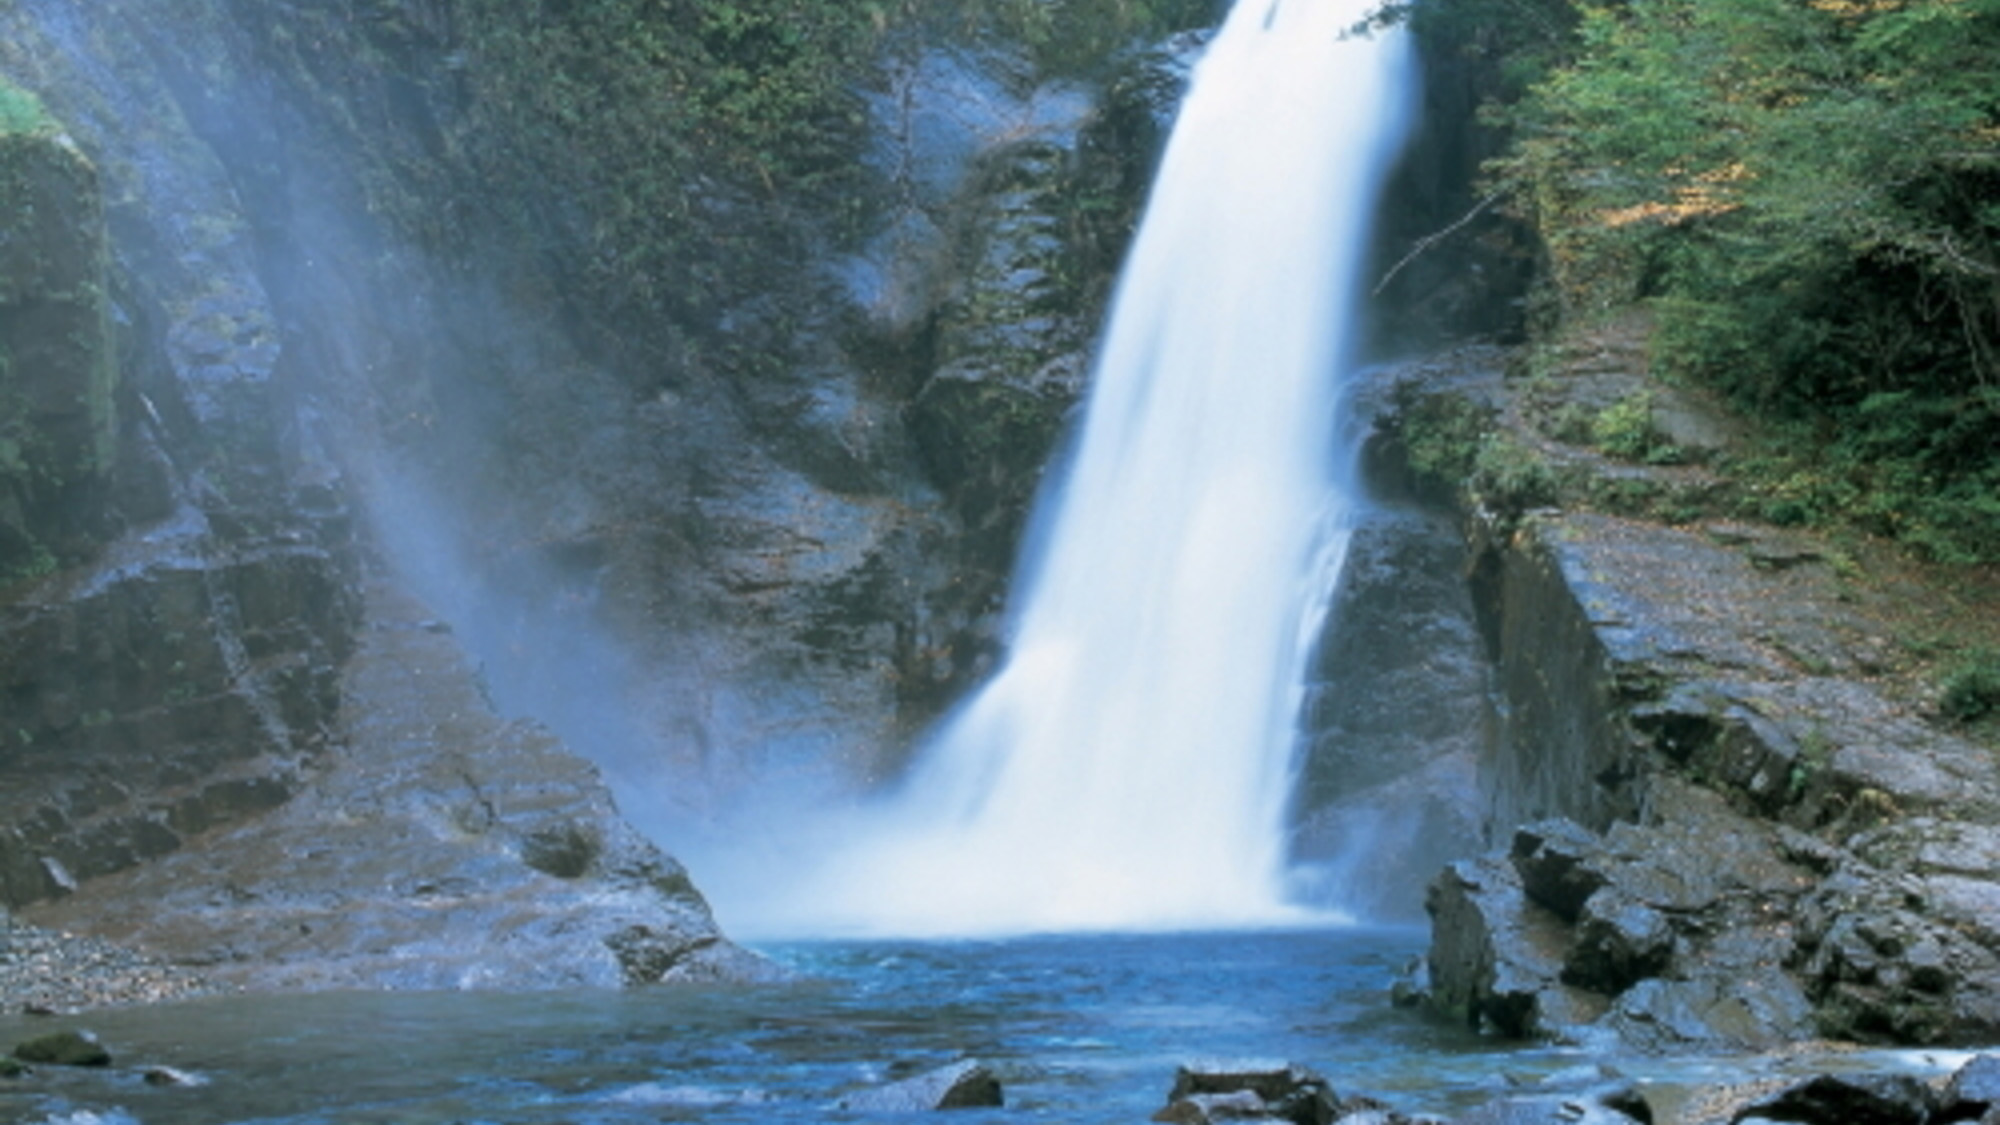 日本三名瀑のひとつ。水量が多く迫力満点！【秋保大滝】